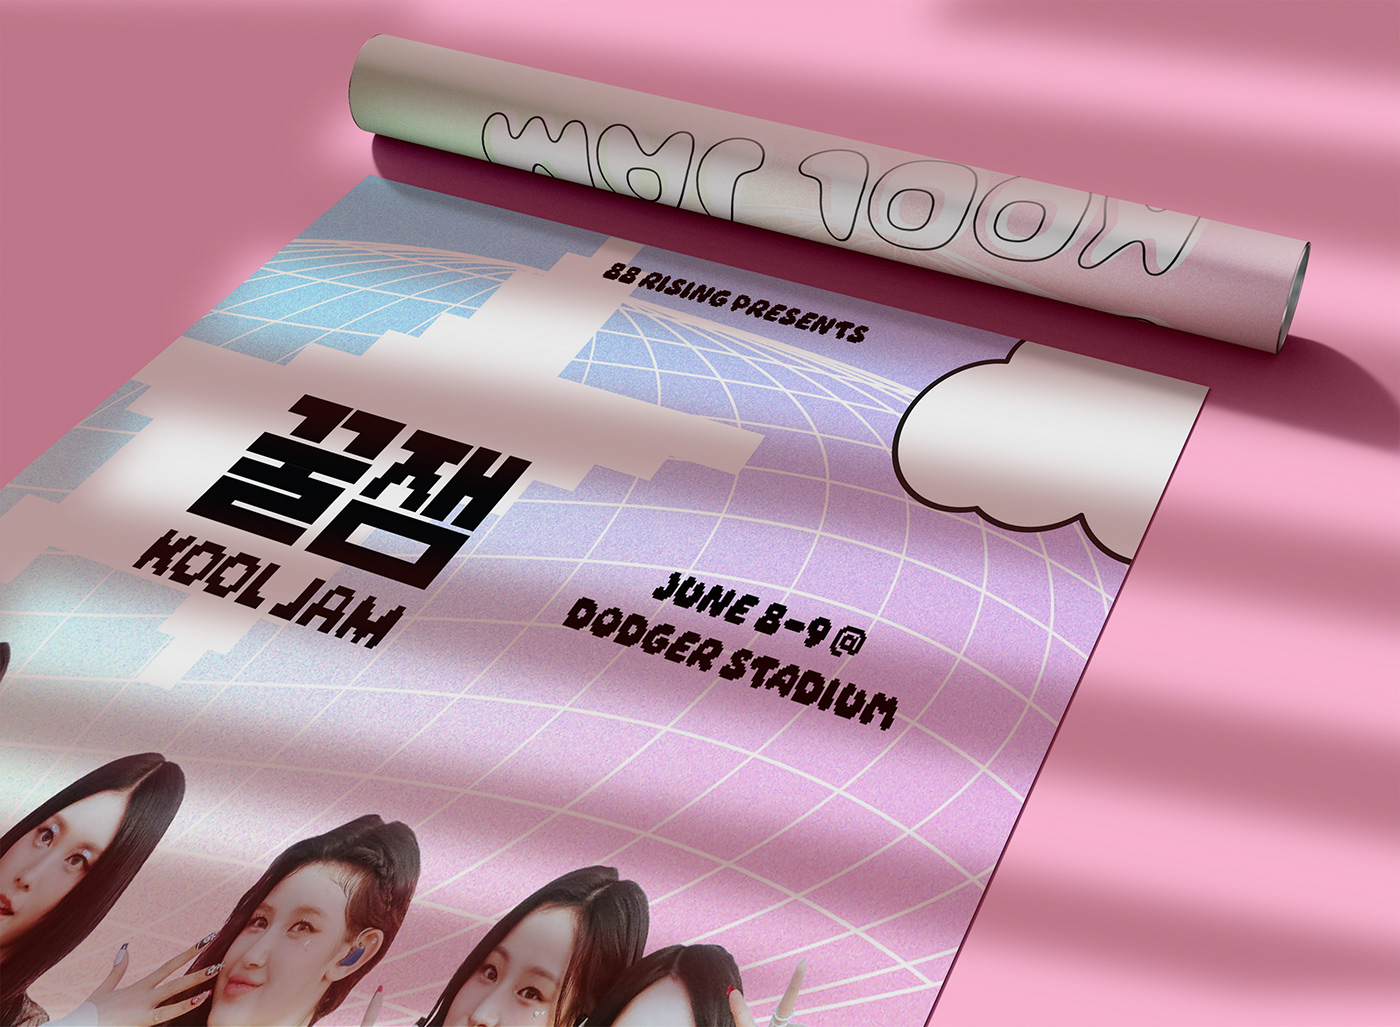 kpop festival poster branding  music design